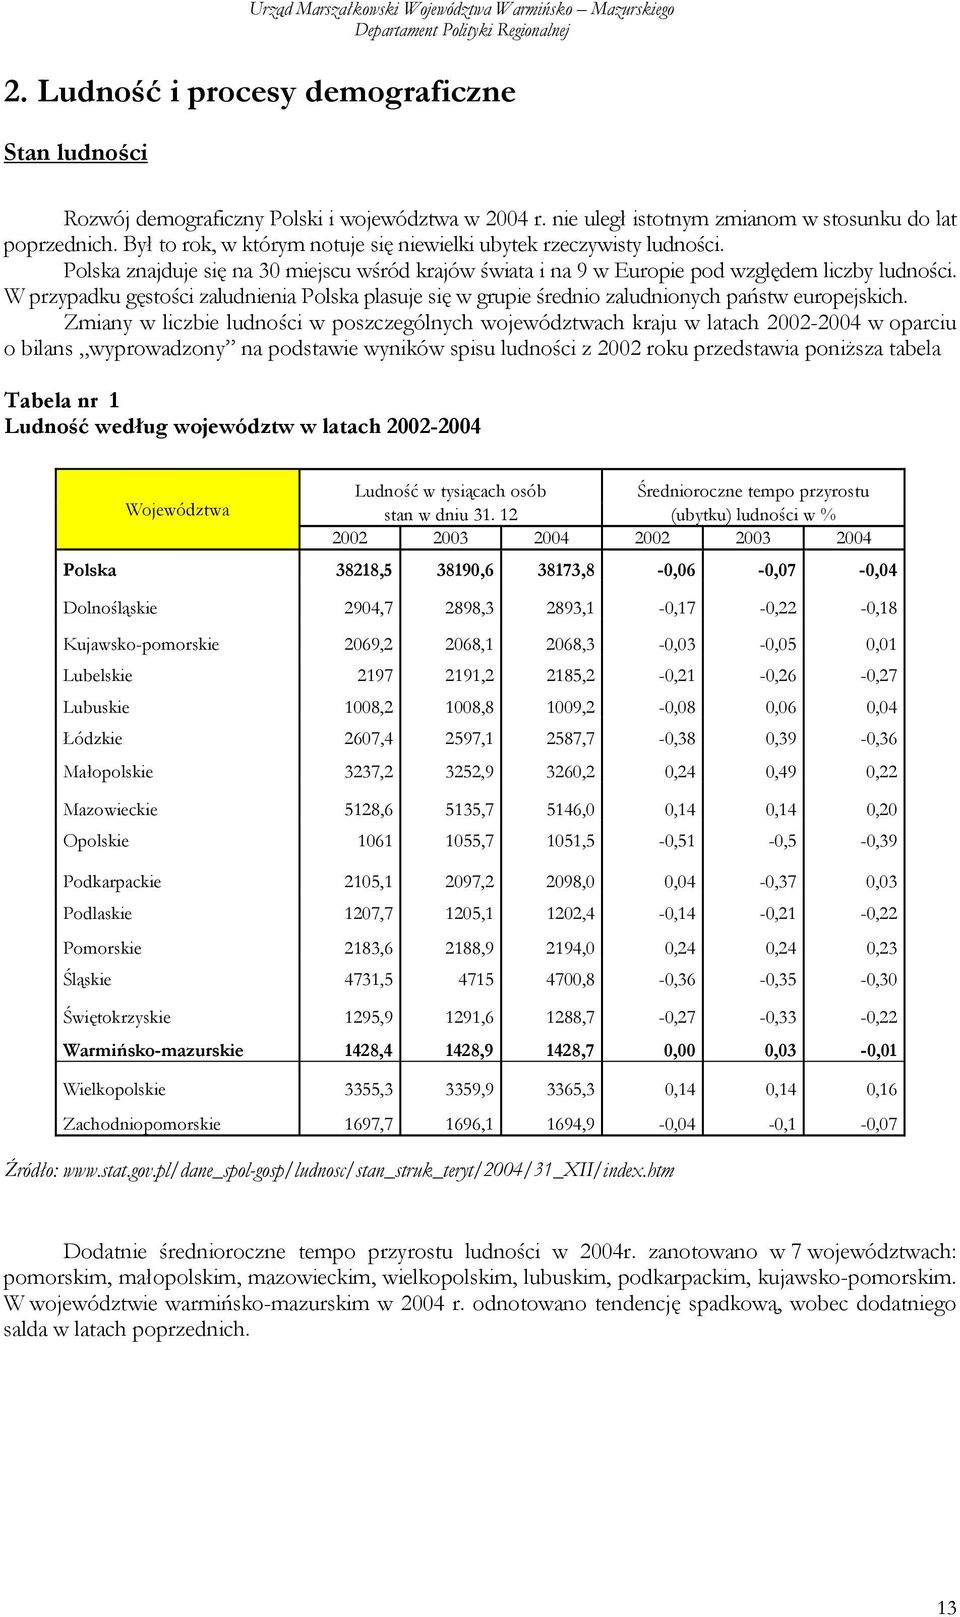 W przypadku gęstości zaludnienia Polska plasuje się w grupie średnio zaludnionych państw europejskich.